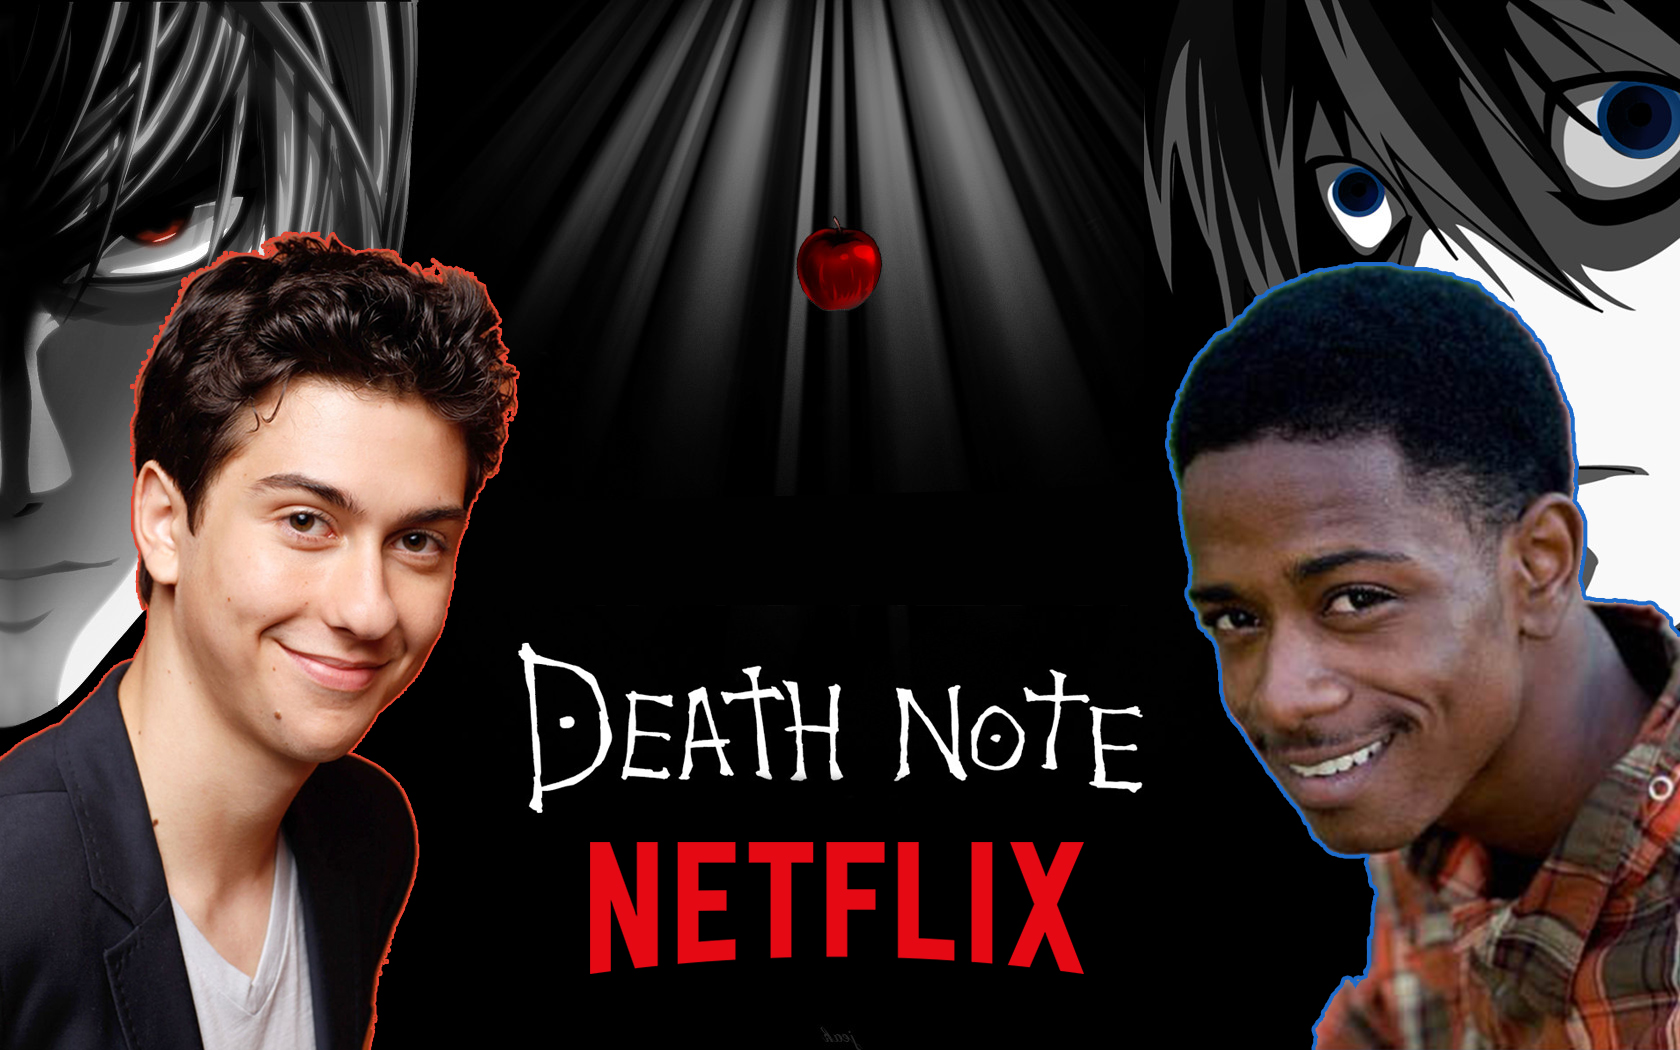 Elenco do filme Death Note(2017)